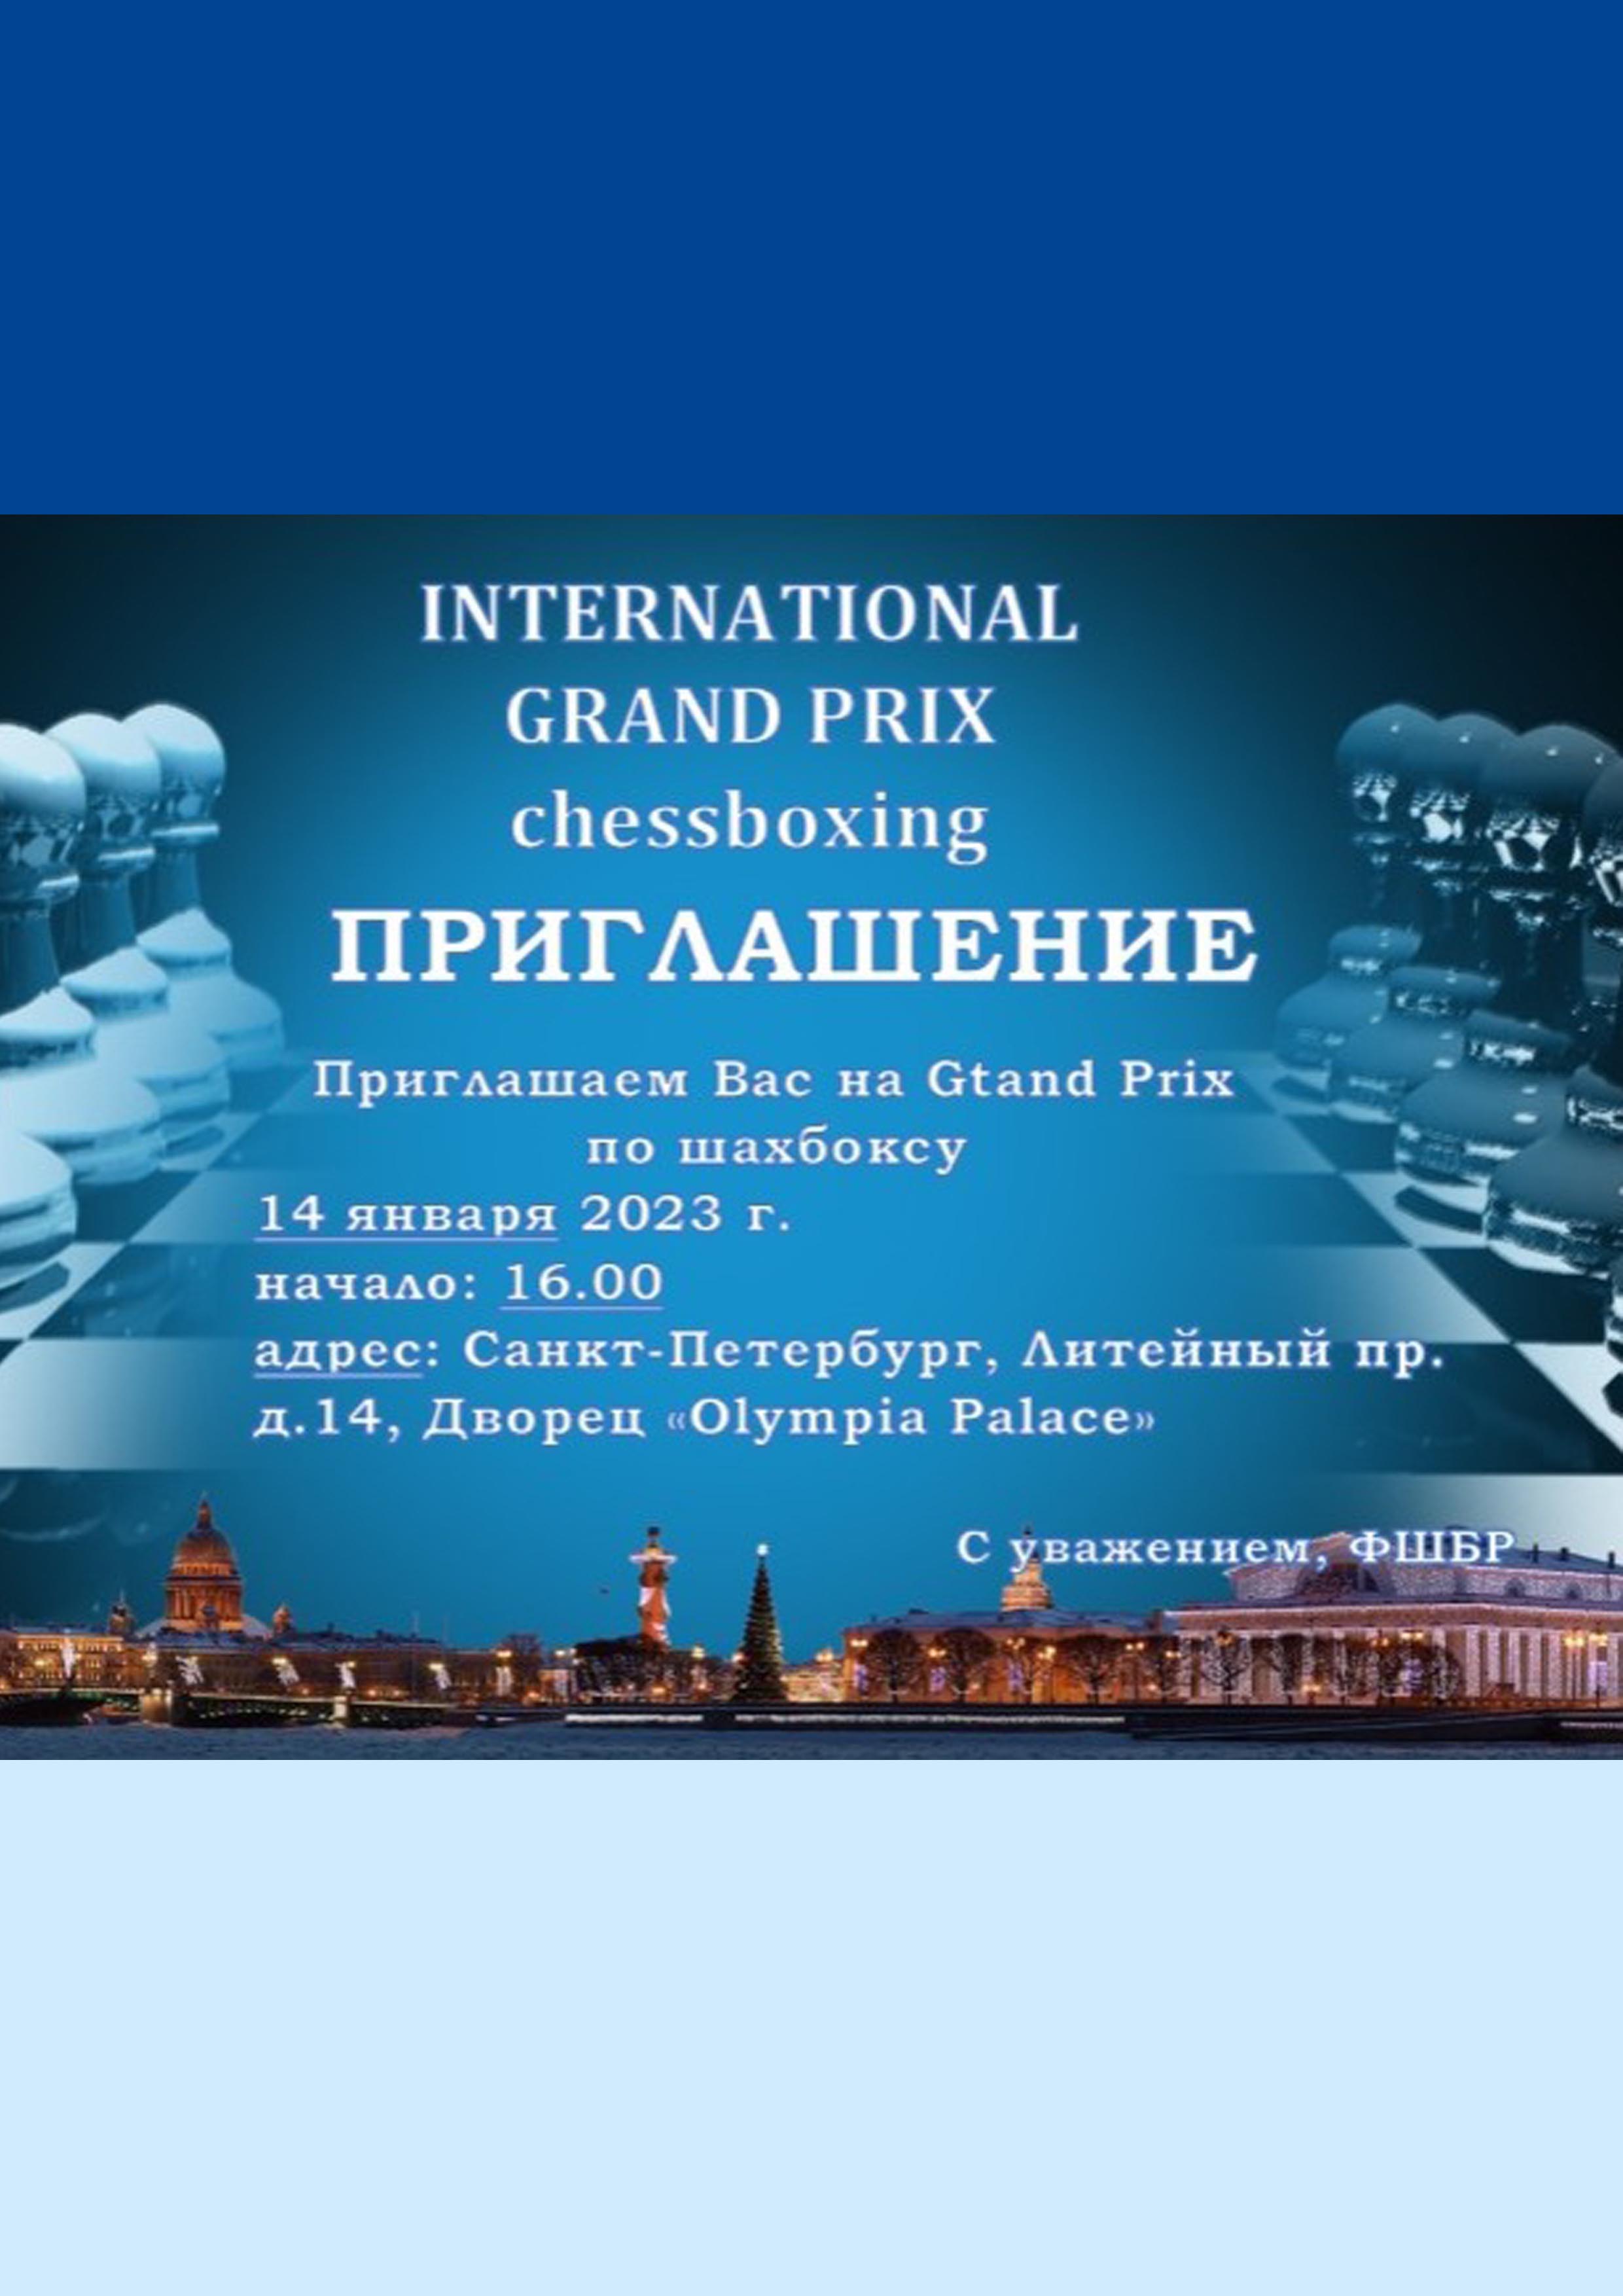 International GRAND PRIX CHESSBOXING 14  Tháng giêng
 2023  năm
